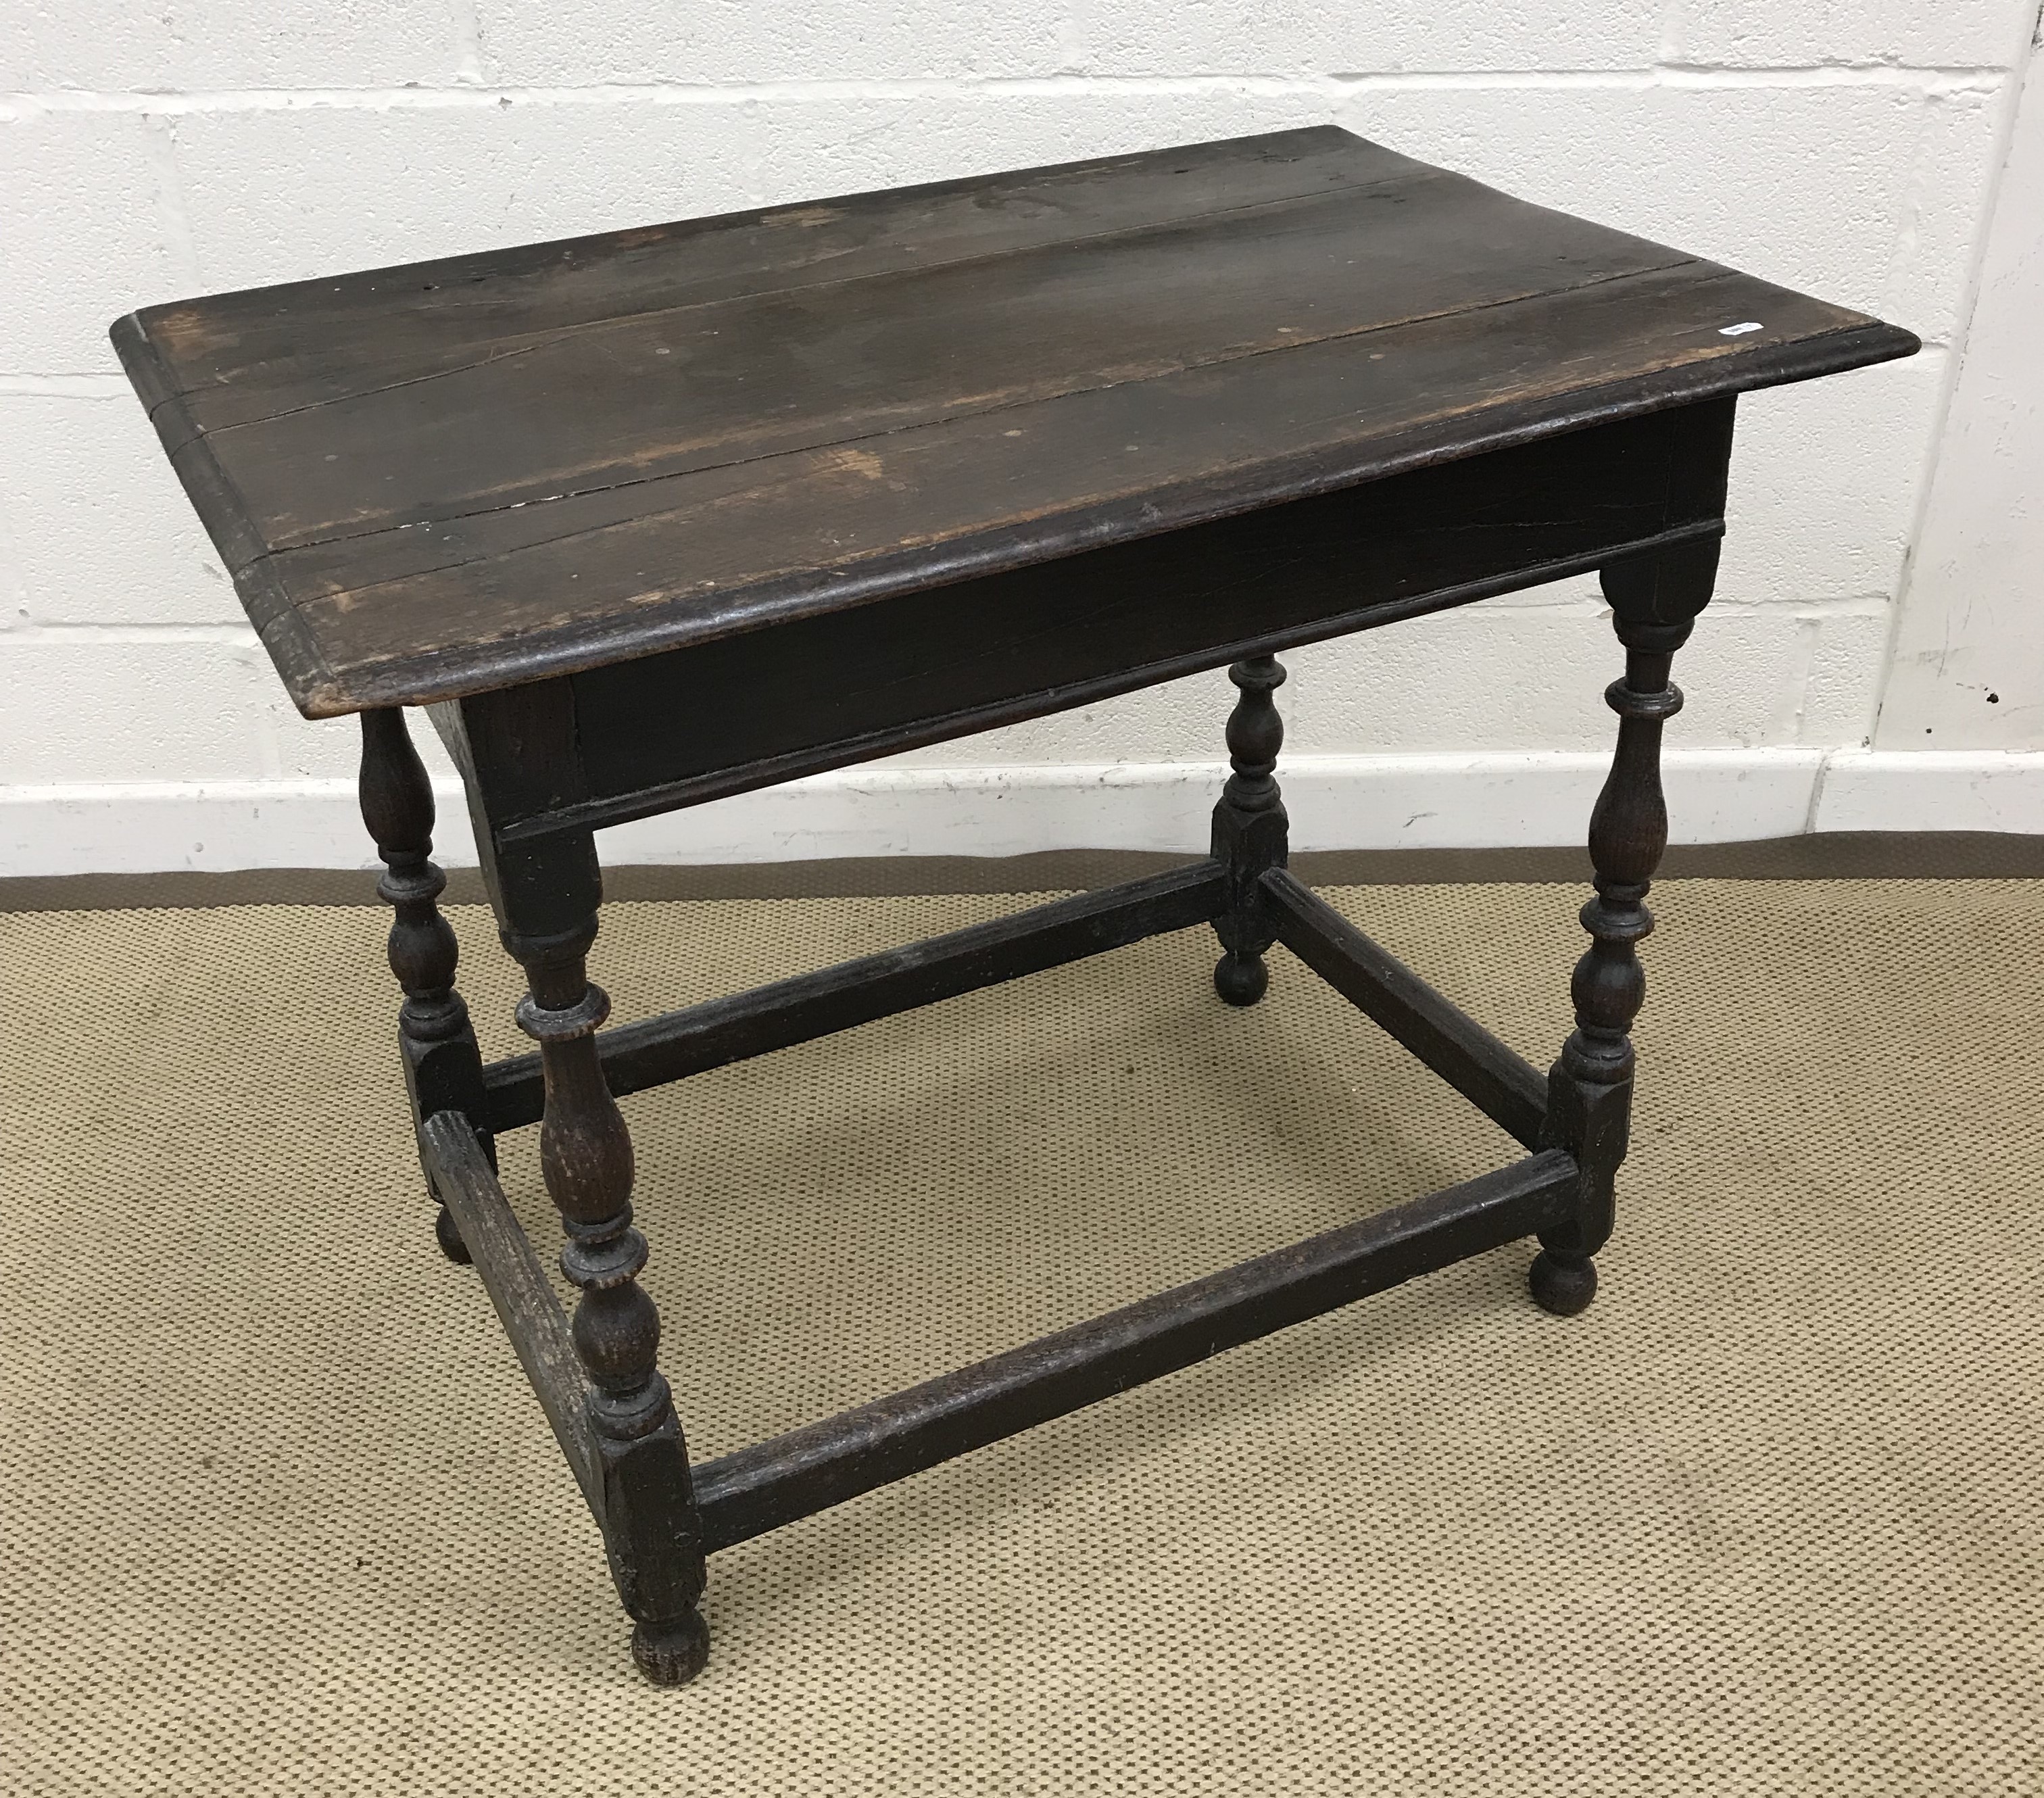 An 18th Century oak side table,